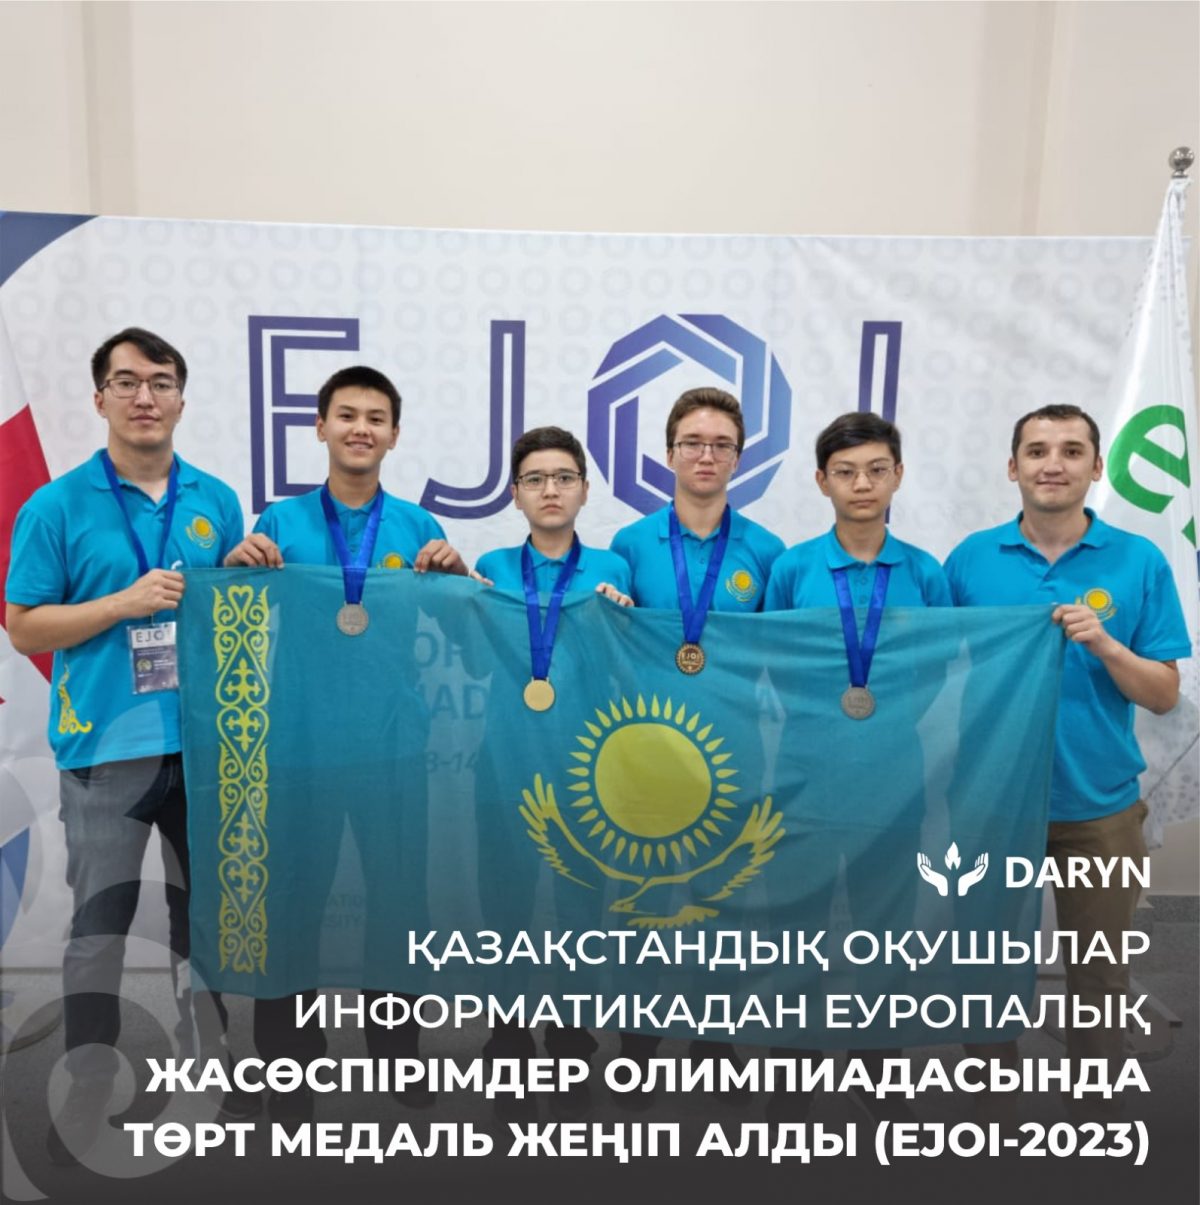 Четыре медали завоевали Казахстанские школьники на Европейской юниорской олимпиаде по информатике (EJOI-2023)